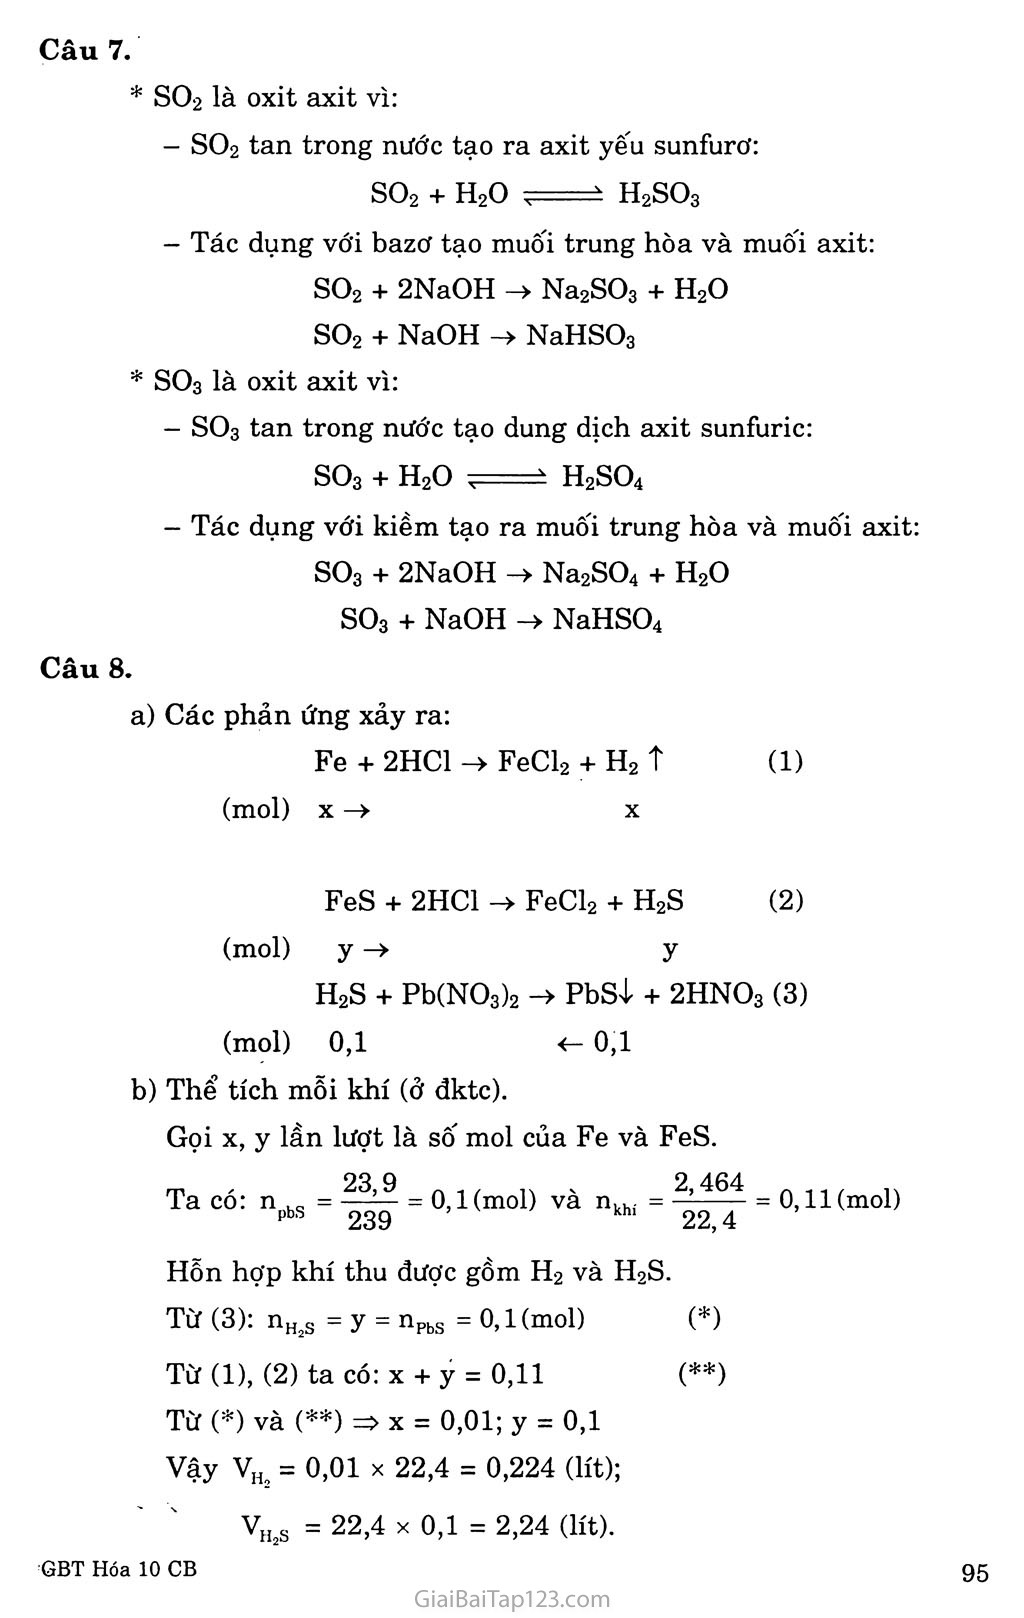 Bài 28. Hiđro sunfua, lưu huỳnh dioxit, lưu huỳnh trioxit trang 5